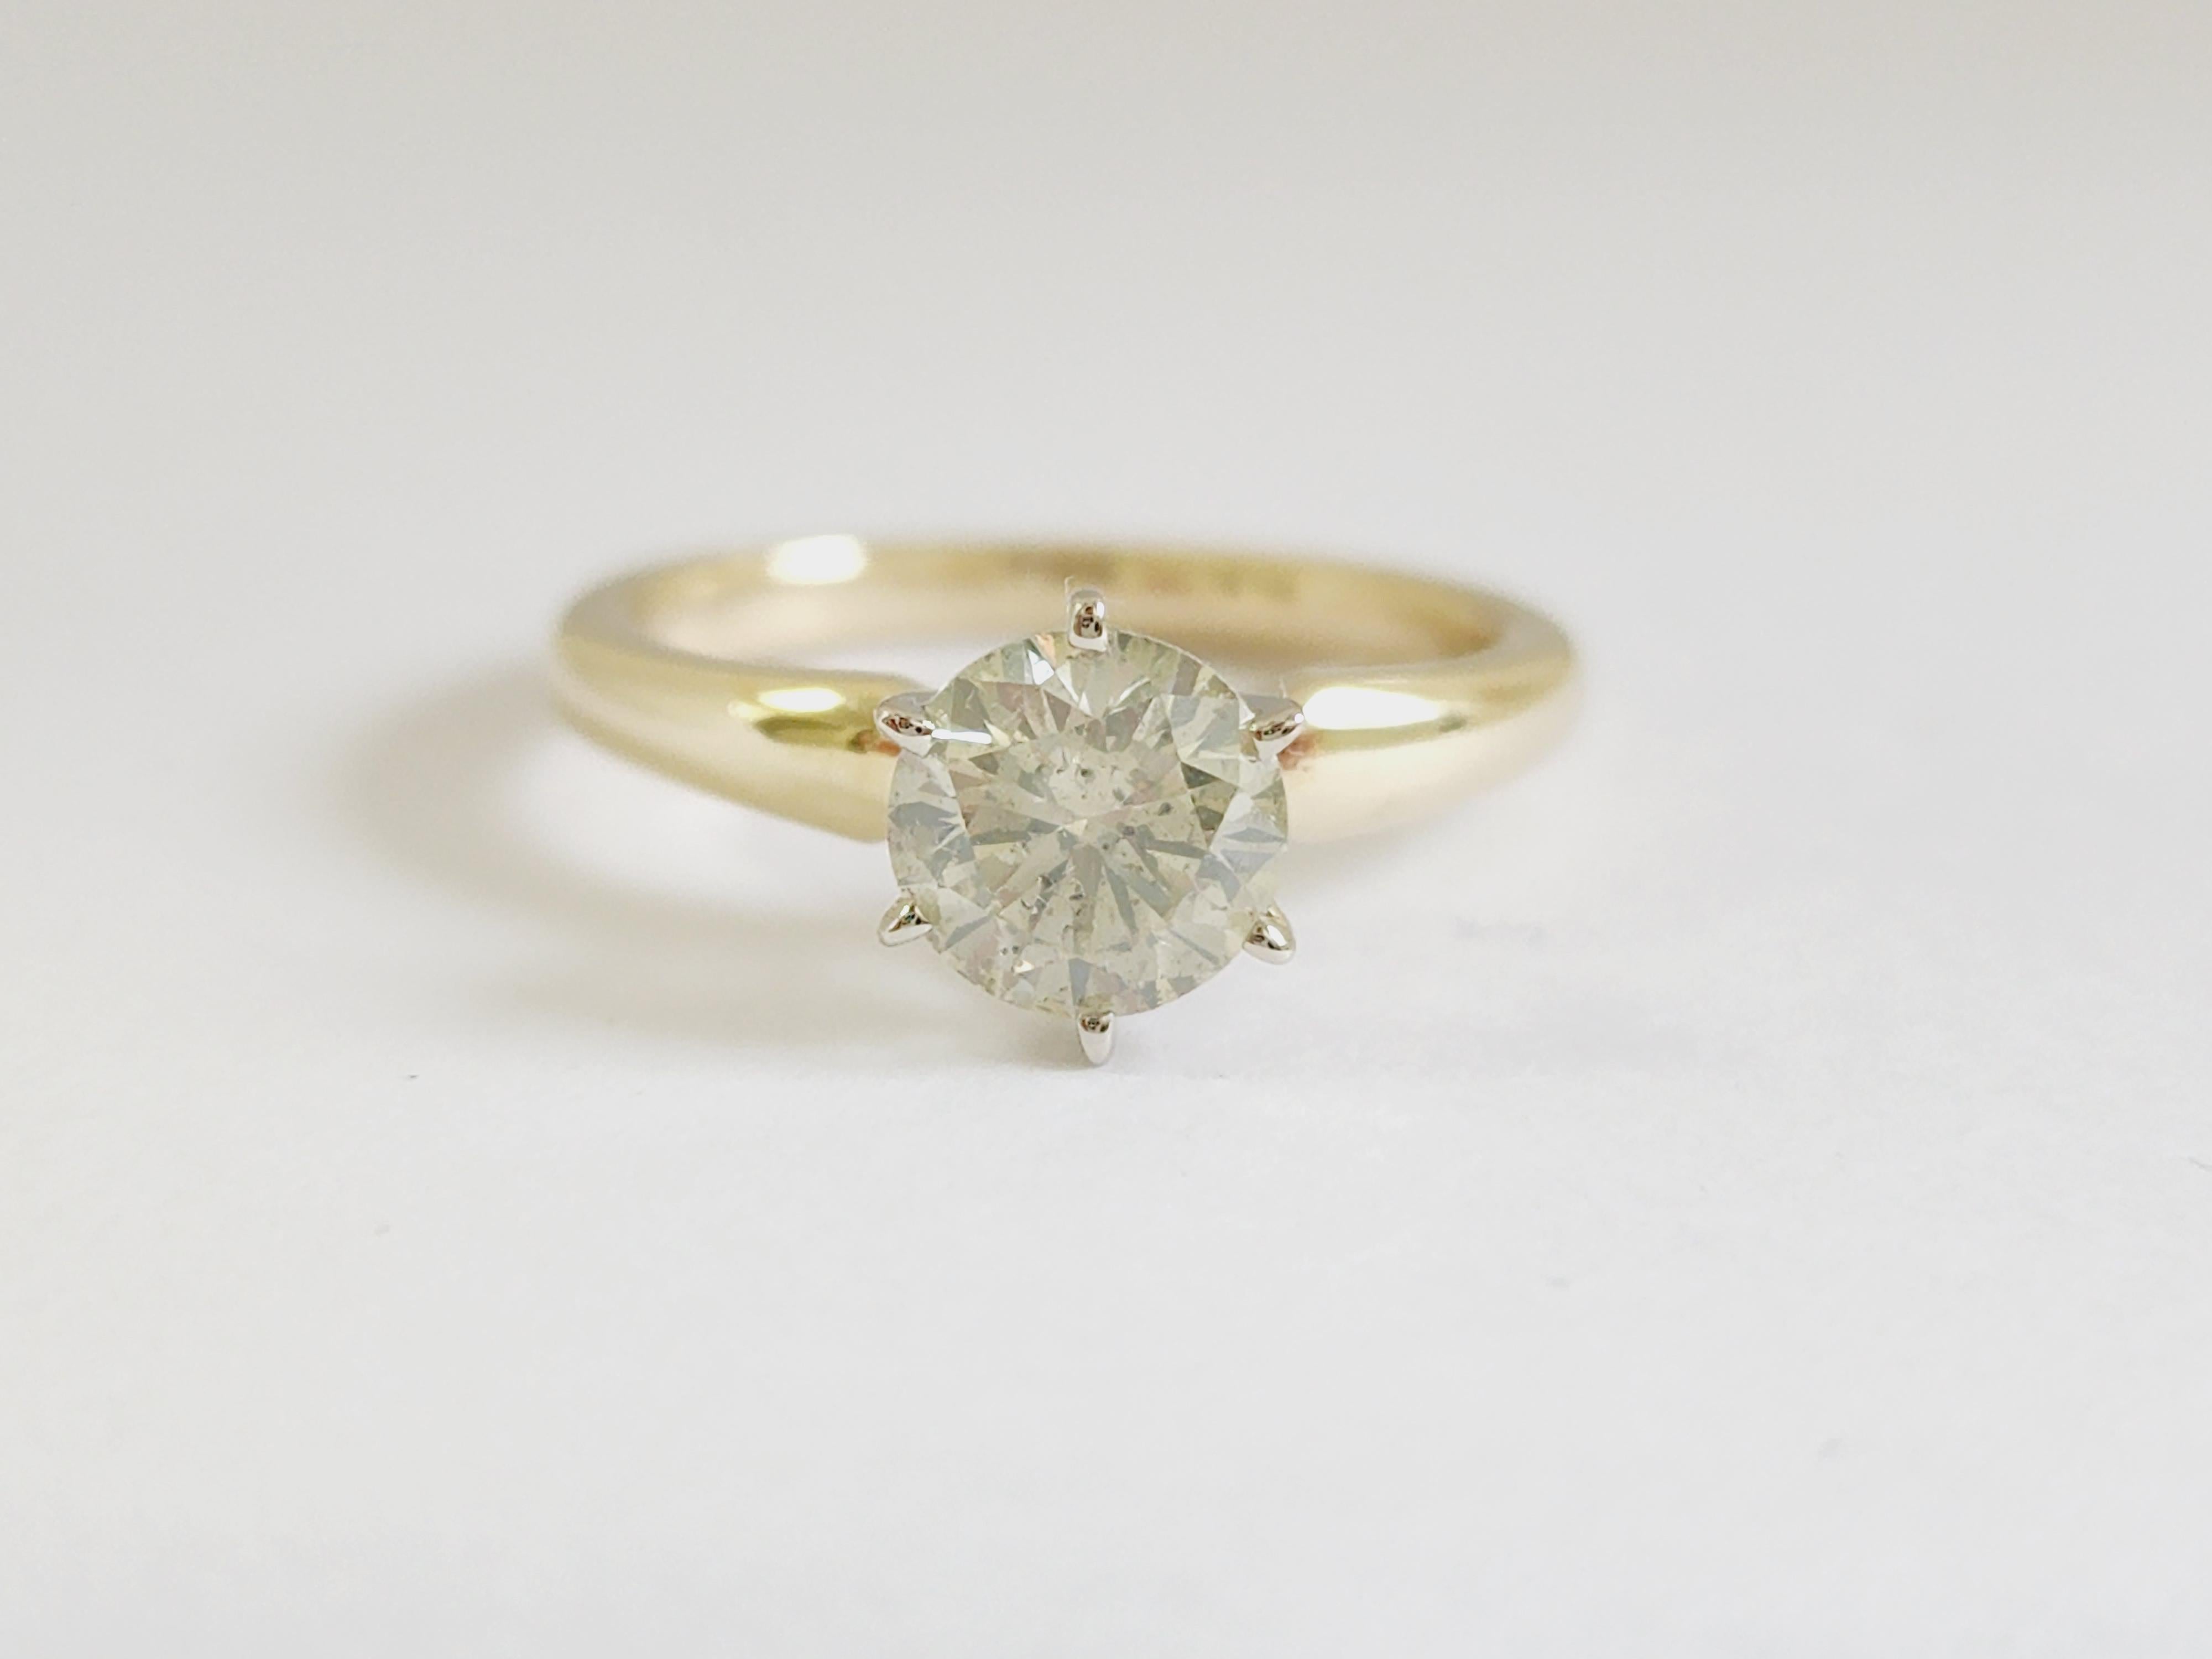 Diamant rond GIA de 1,29 carats serti sur une bague solitaire à 6 griffes en or jaune 14 carats. 
Couleur O-P, Clarté I2
Taille de l'anneau 7 